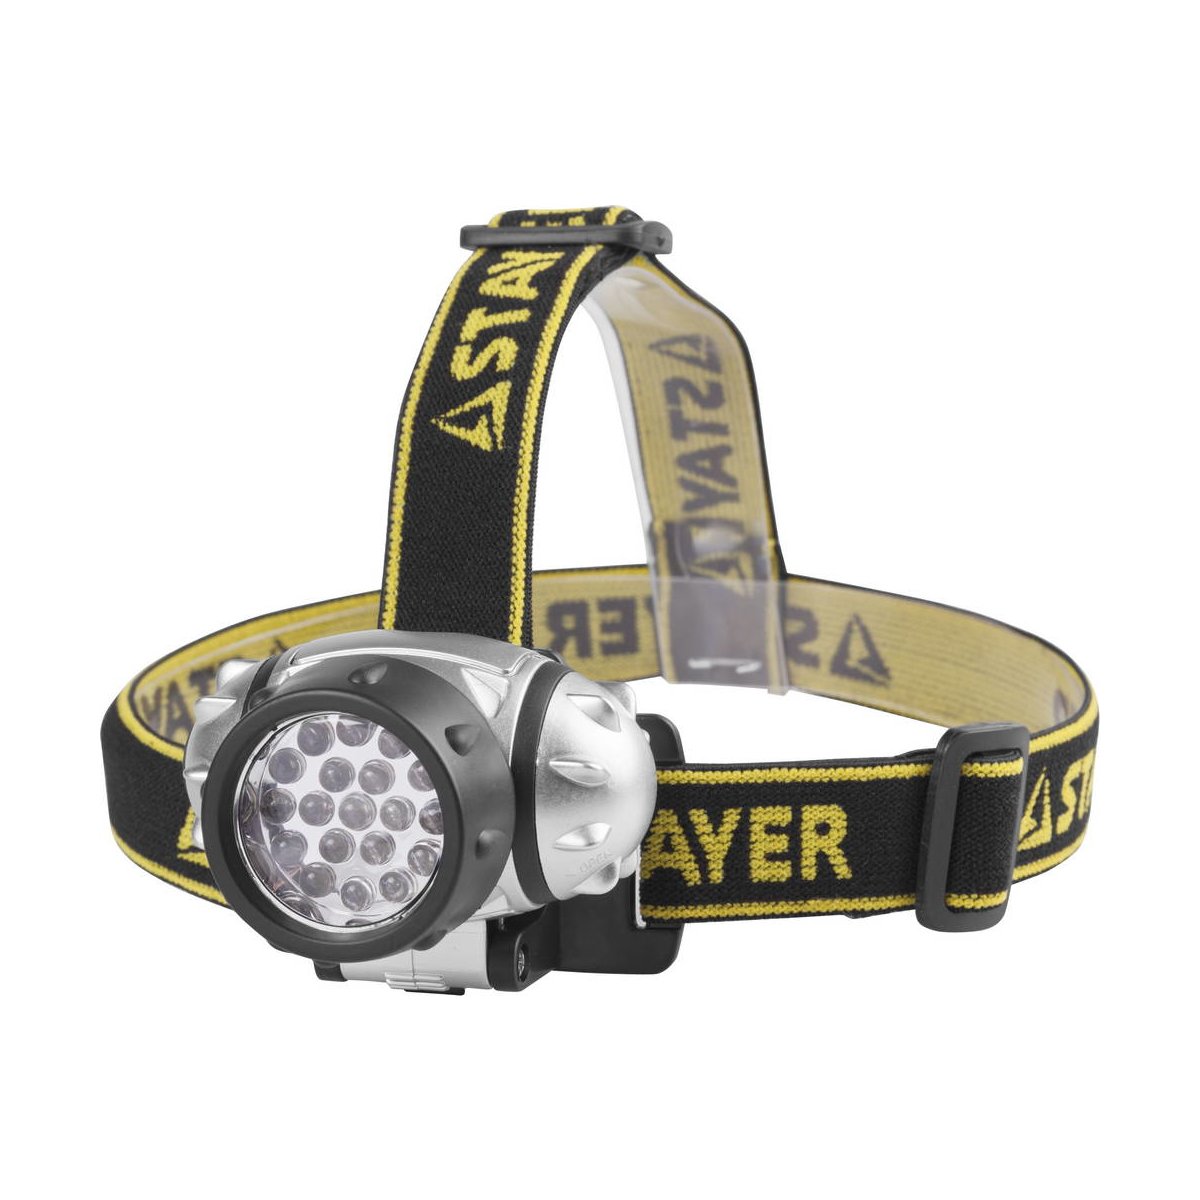 STAYER 19 LED, 3хAAA, налобный, фонарь налобный 56570